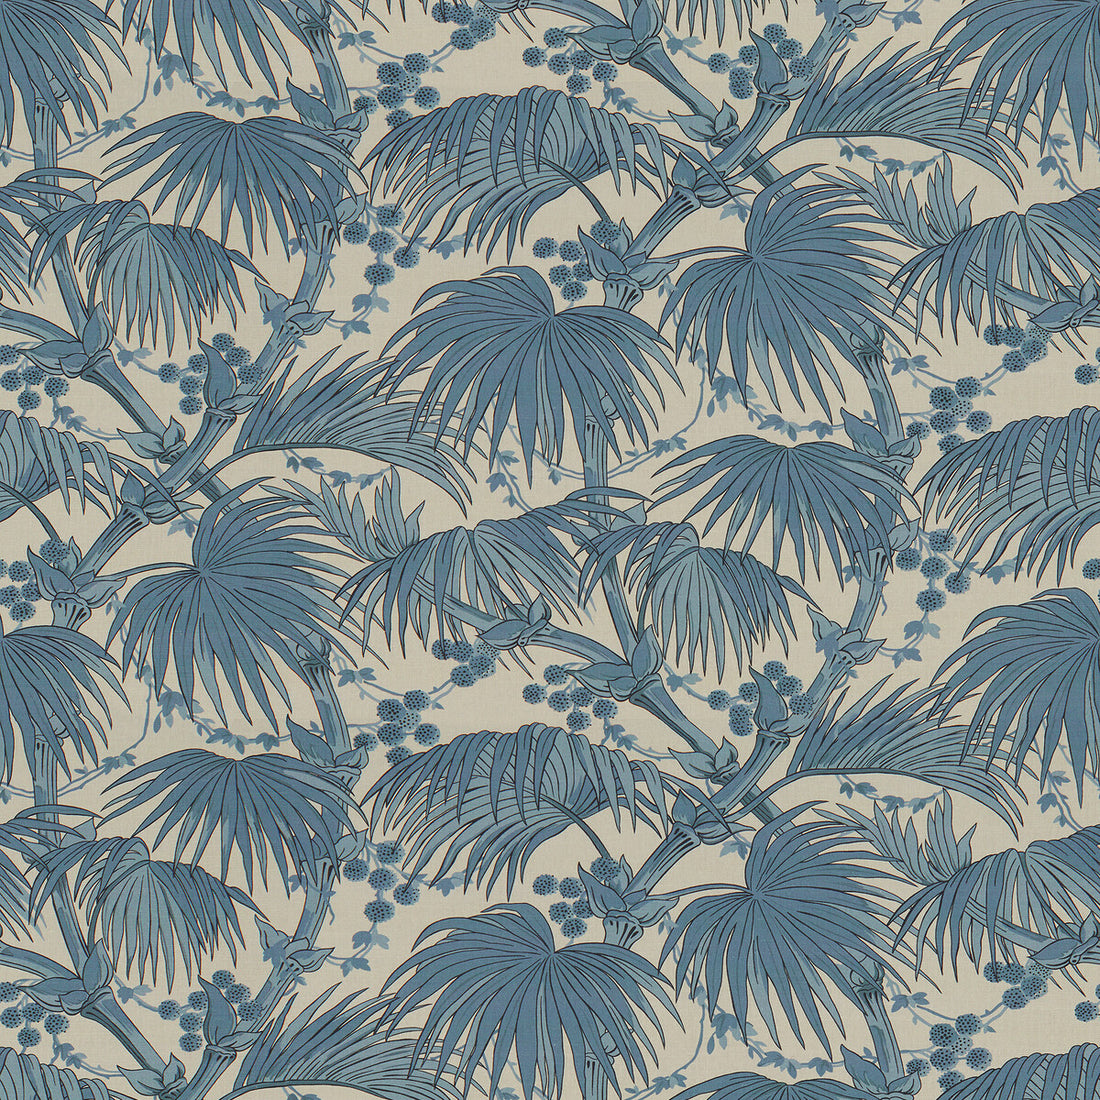 Las Palmas fabric in blue color - pattern 2017109.15.0 - by Lee Jofa in the Oscar De La Renta III collection